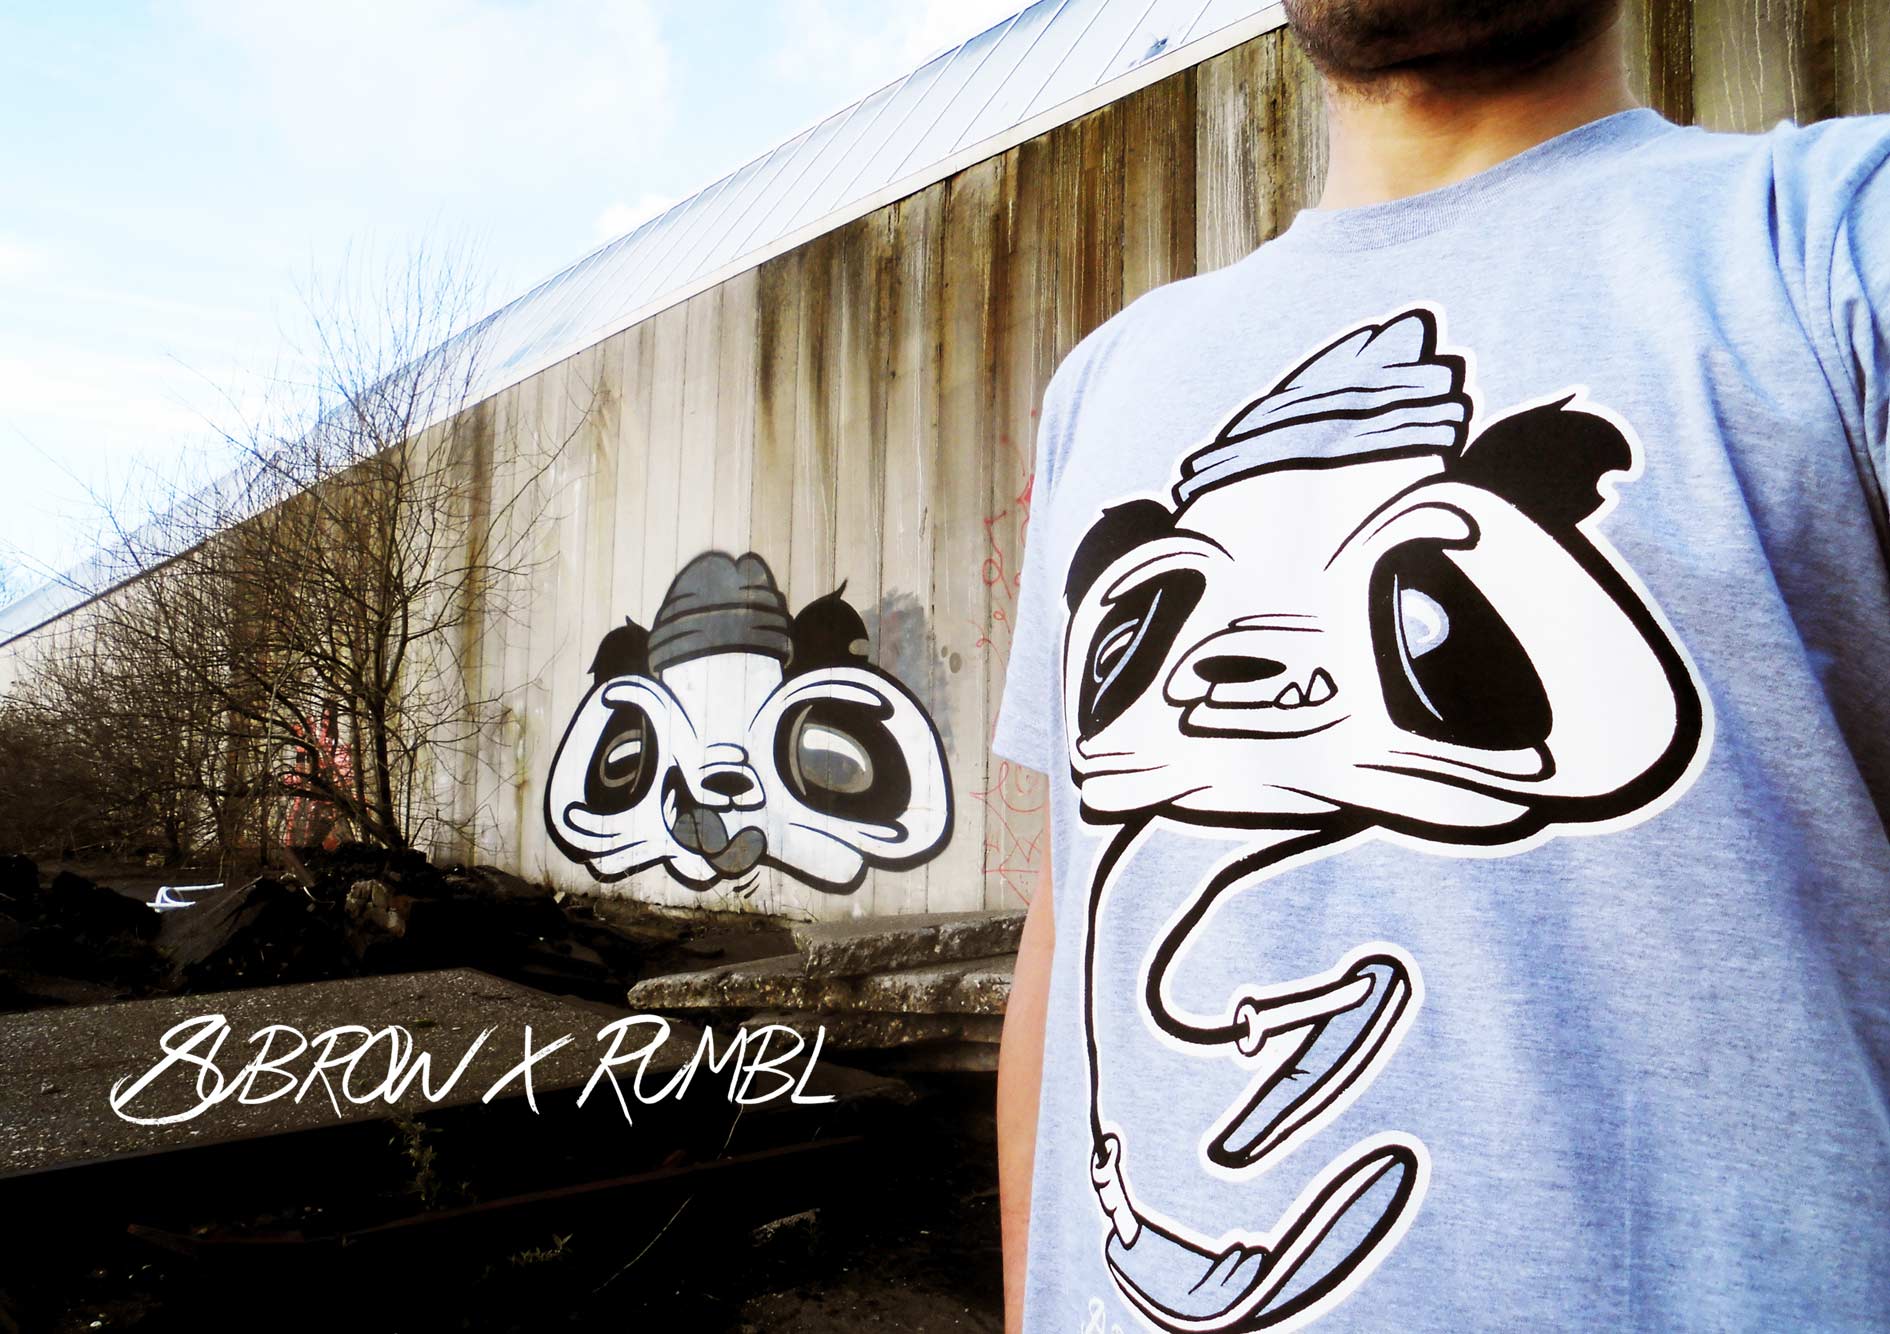 Rumbl Panda t-shirt